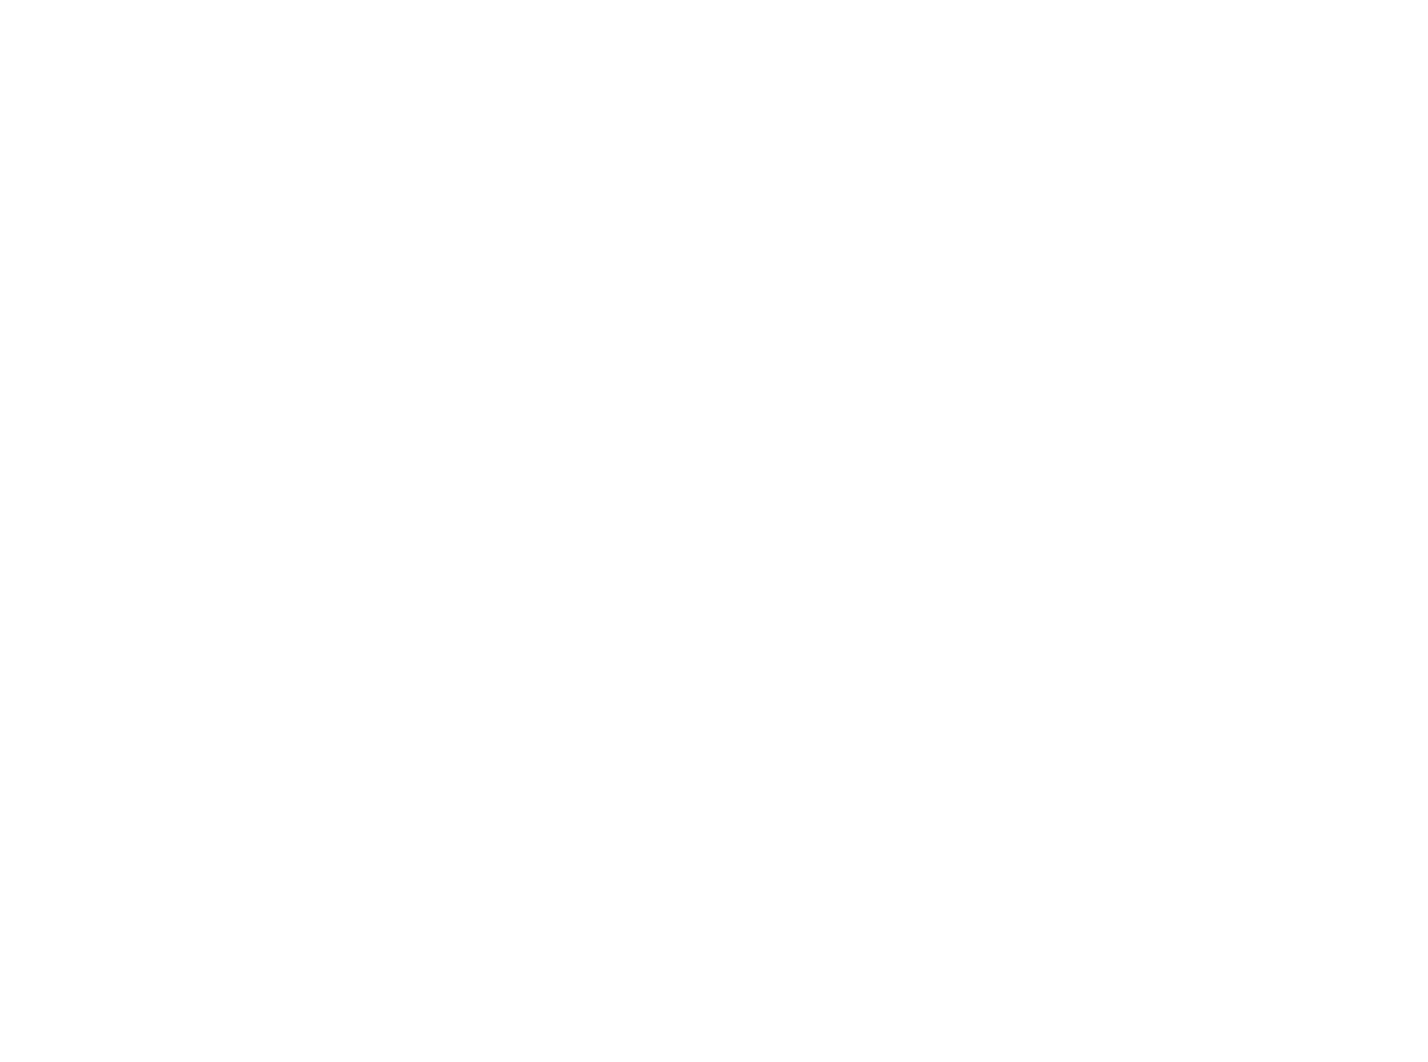 E Mexicana, Andrea Meza, cu su estilo y carisma riba e escenario di Hard Rock Hotel & Casino na Florida, a keda coron   